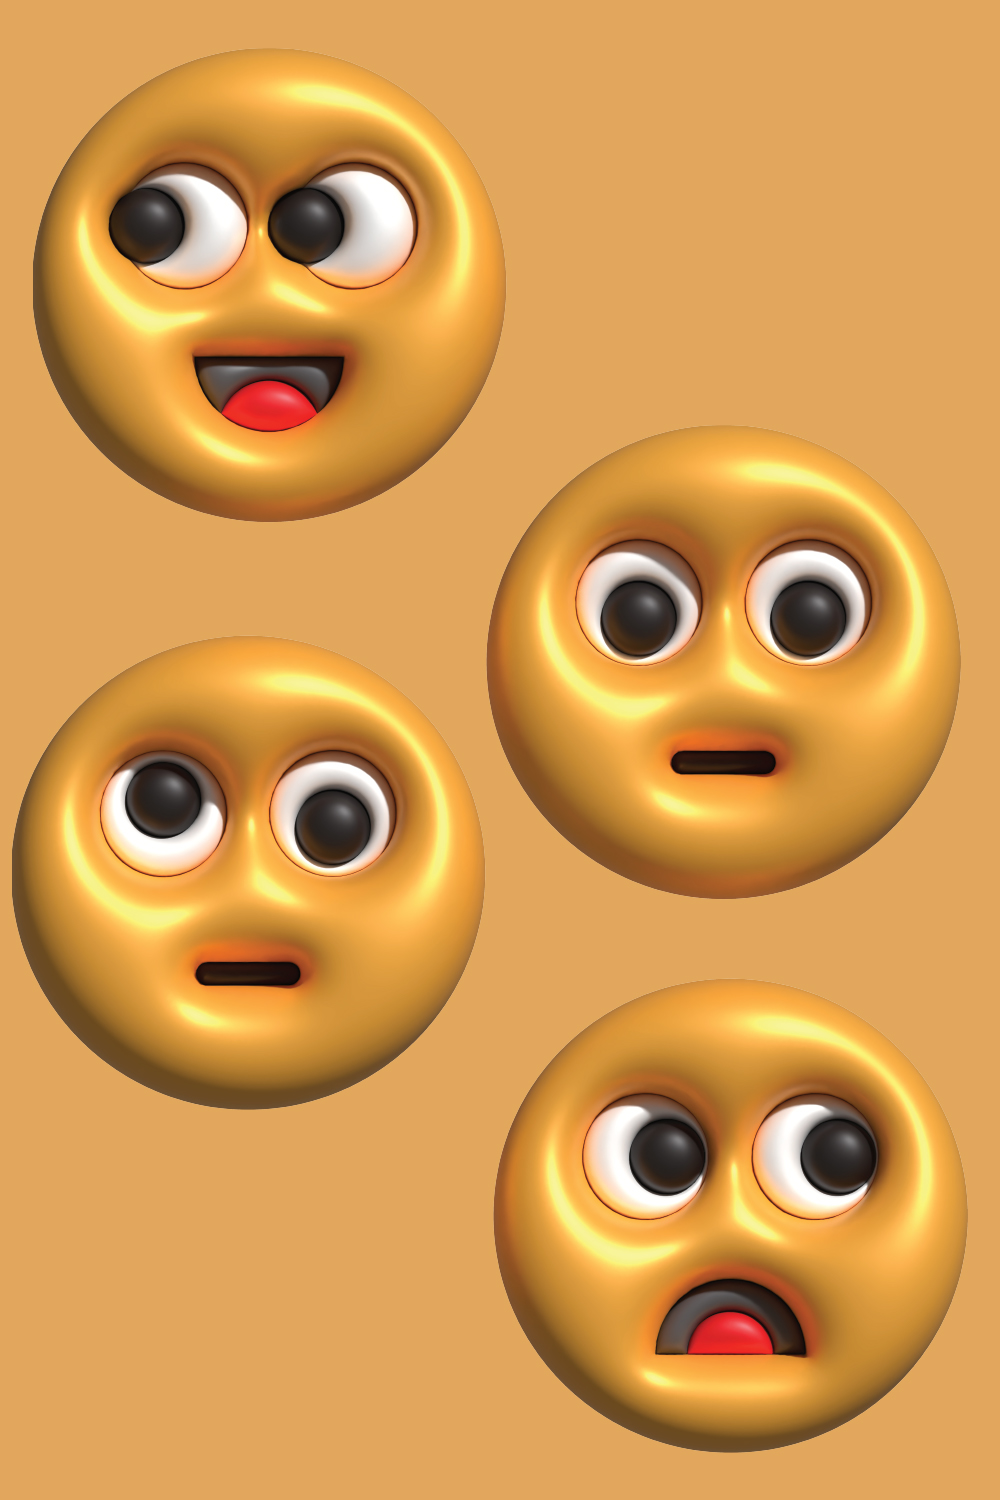 3D Emoticon pinterest preview image.